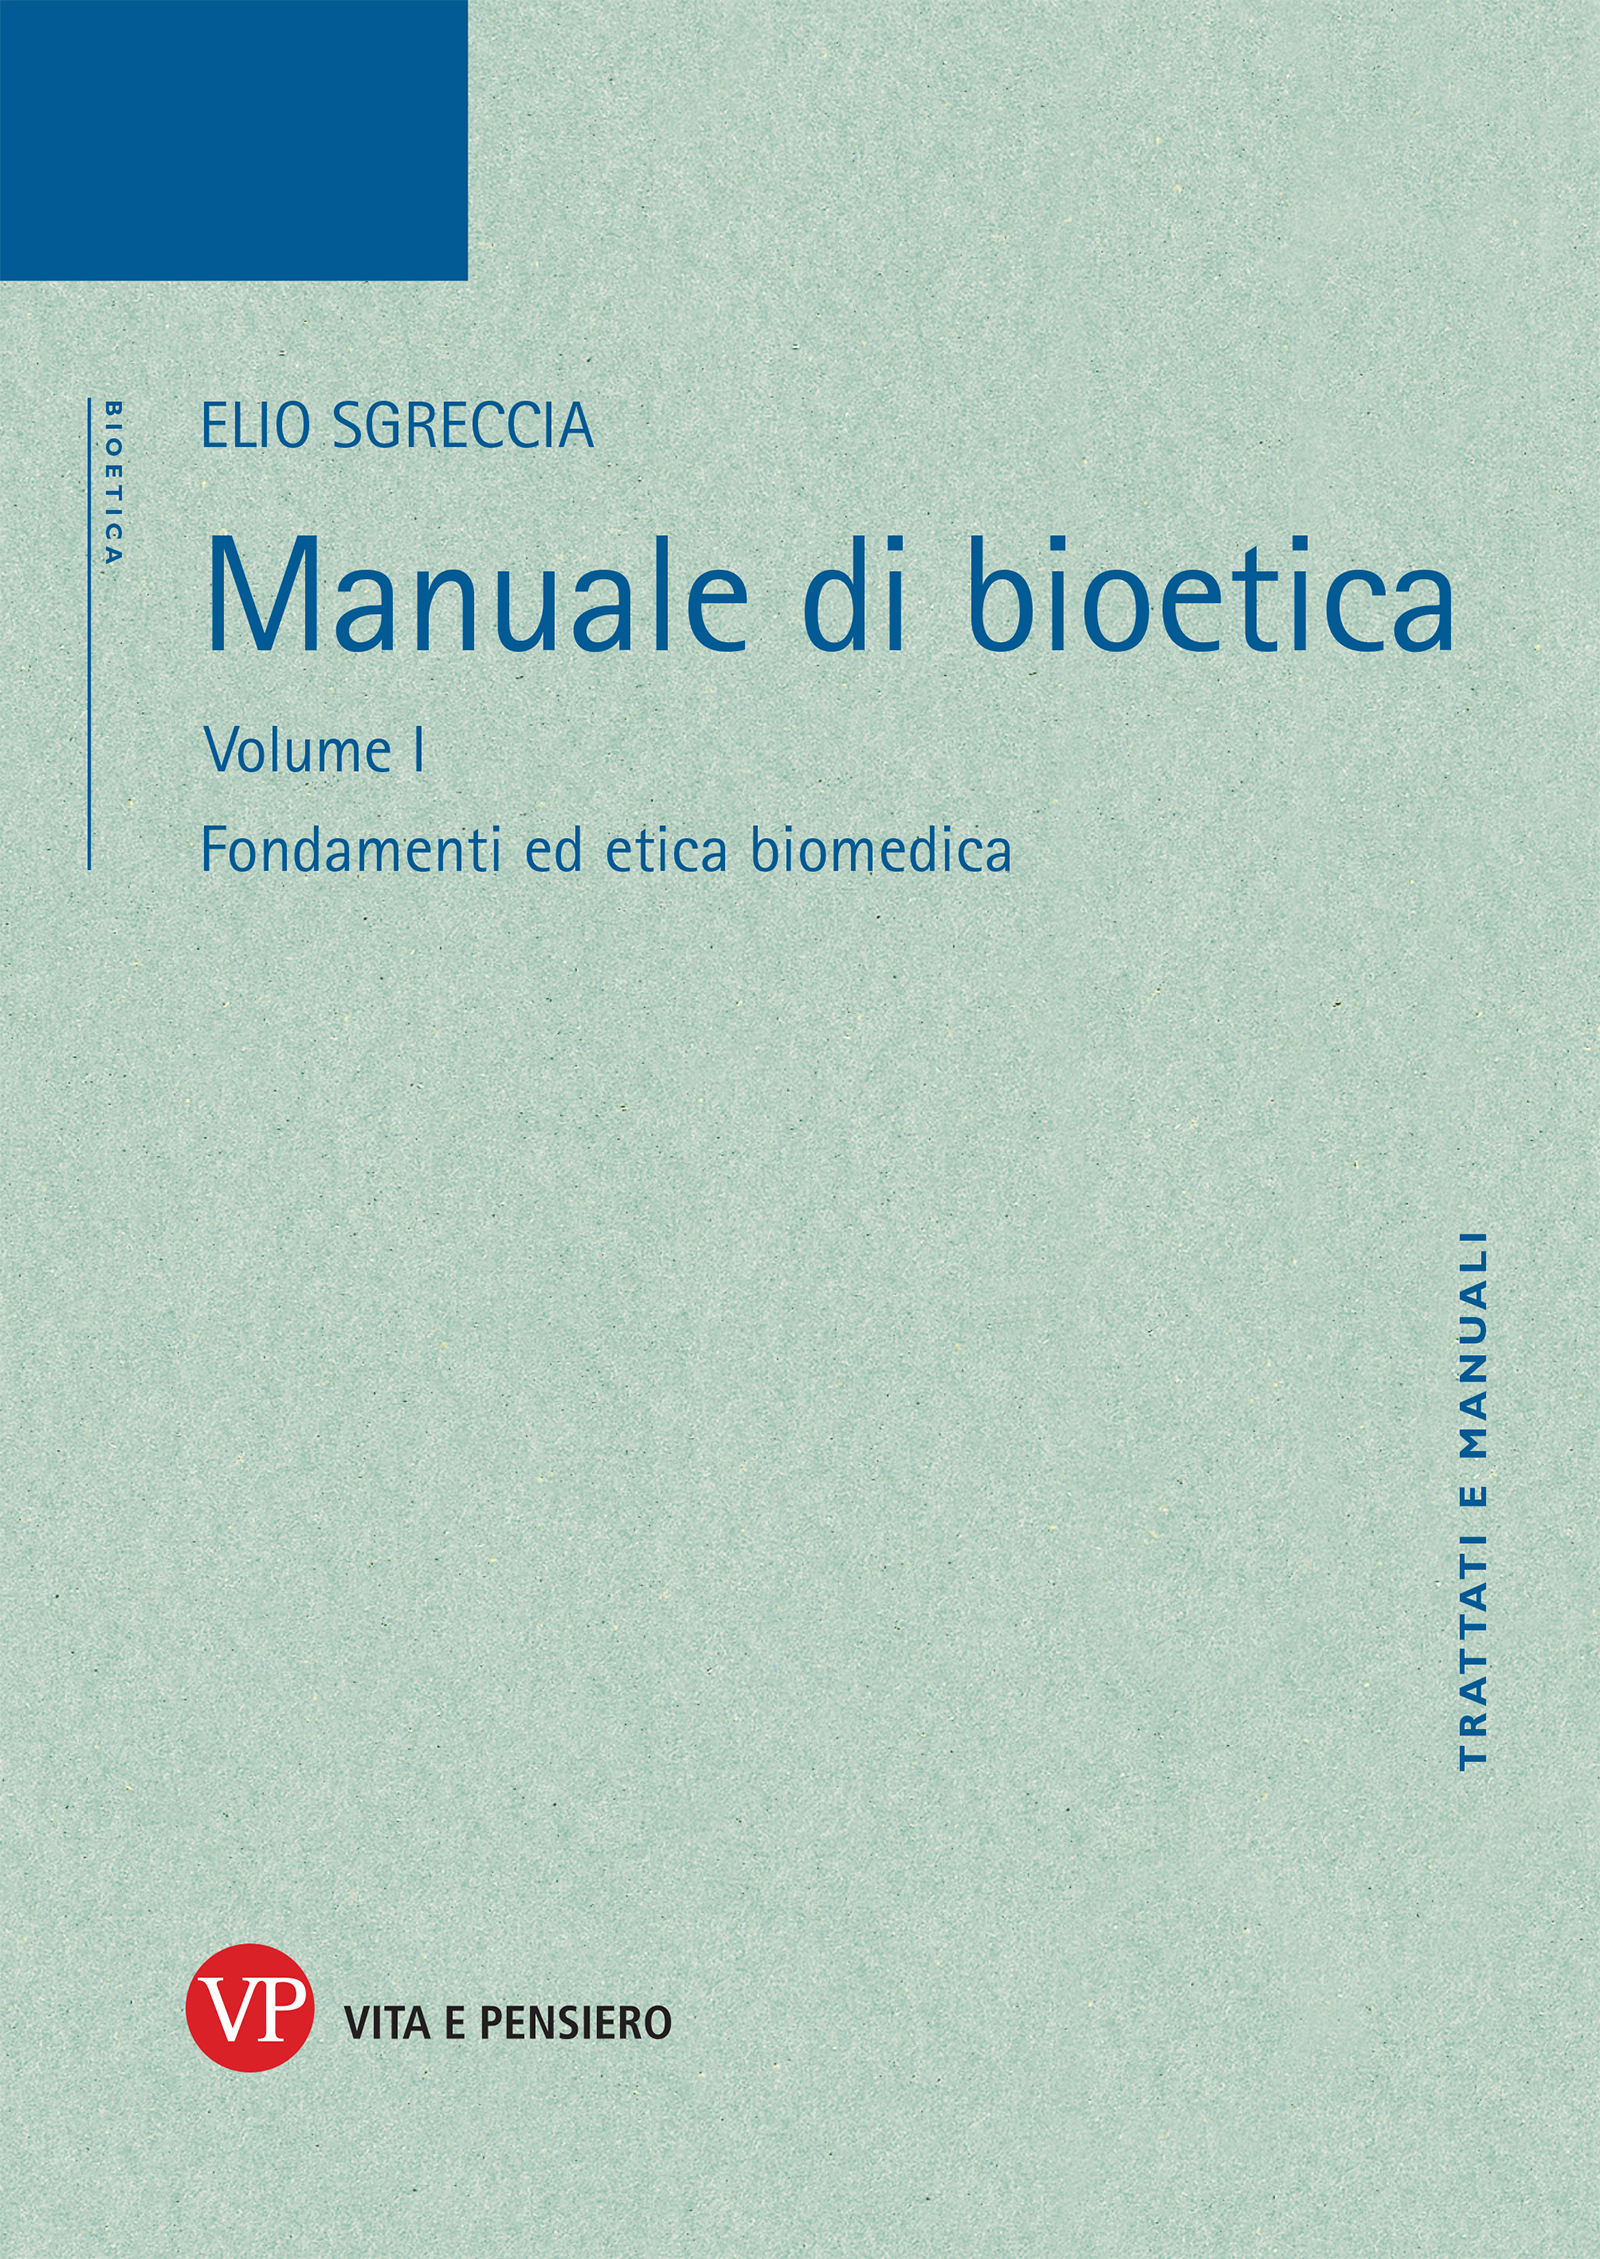  Manuale di meccanica enologica: 9788820348748: De Vita, Pietro:  Books